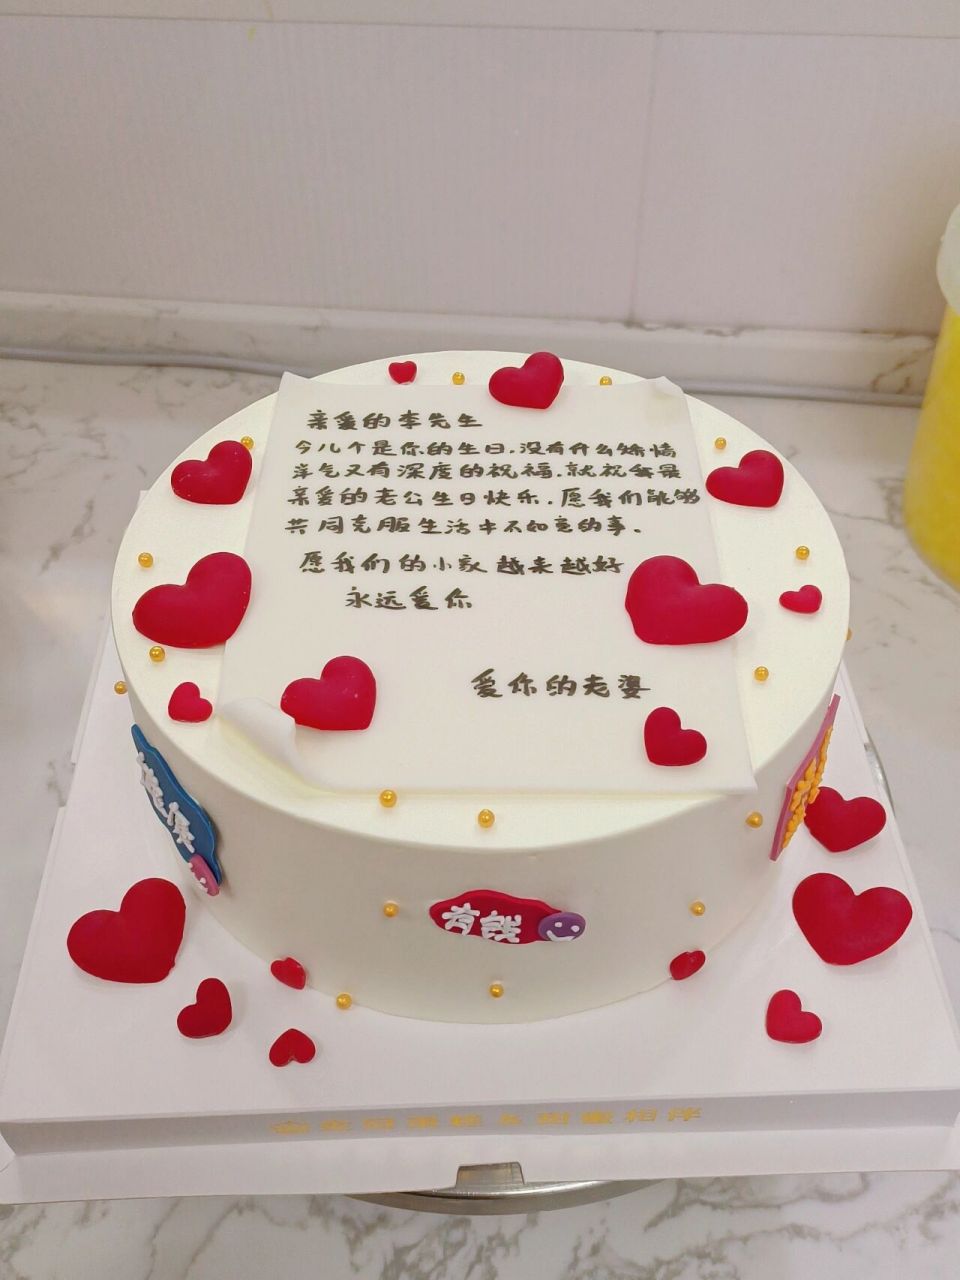 送给老公的生日蛋糕 生日祝福